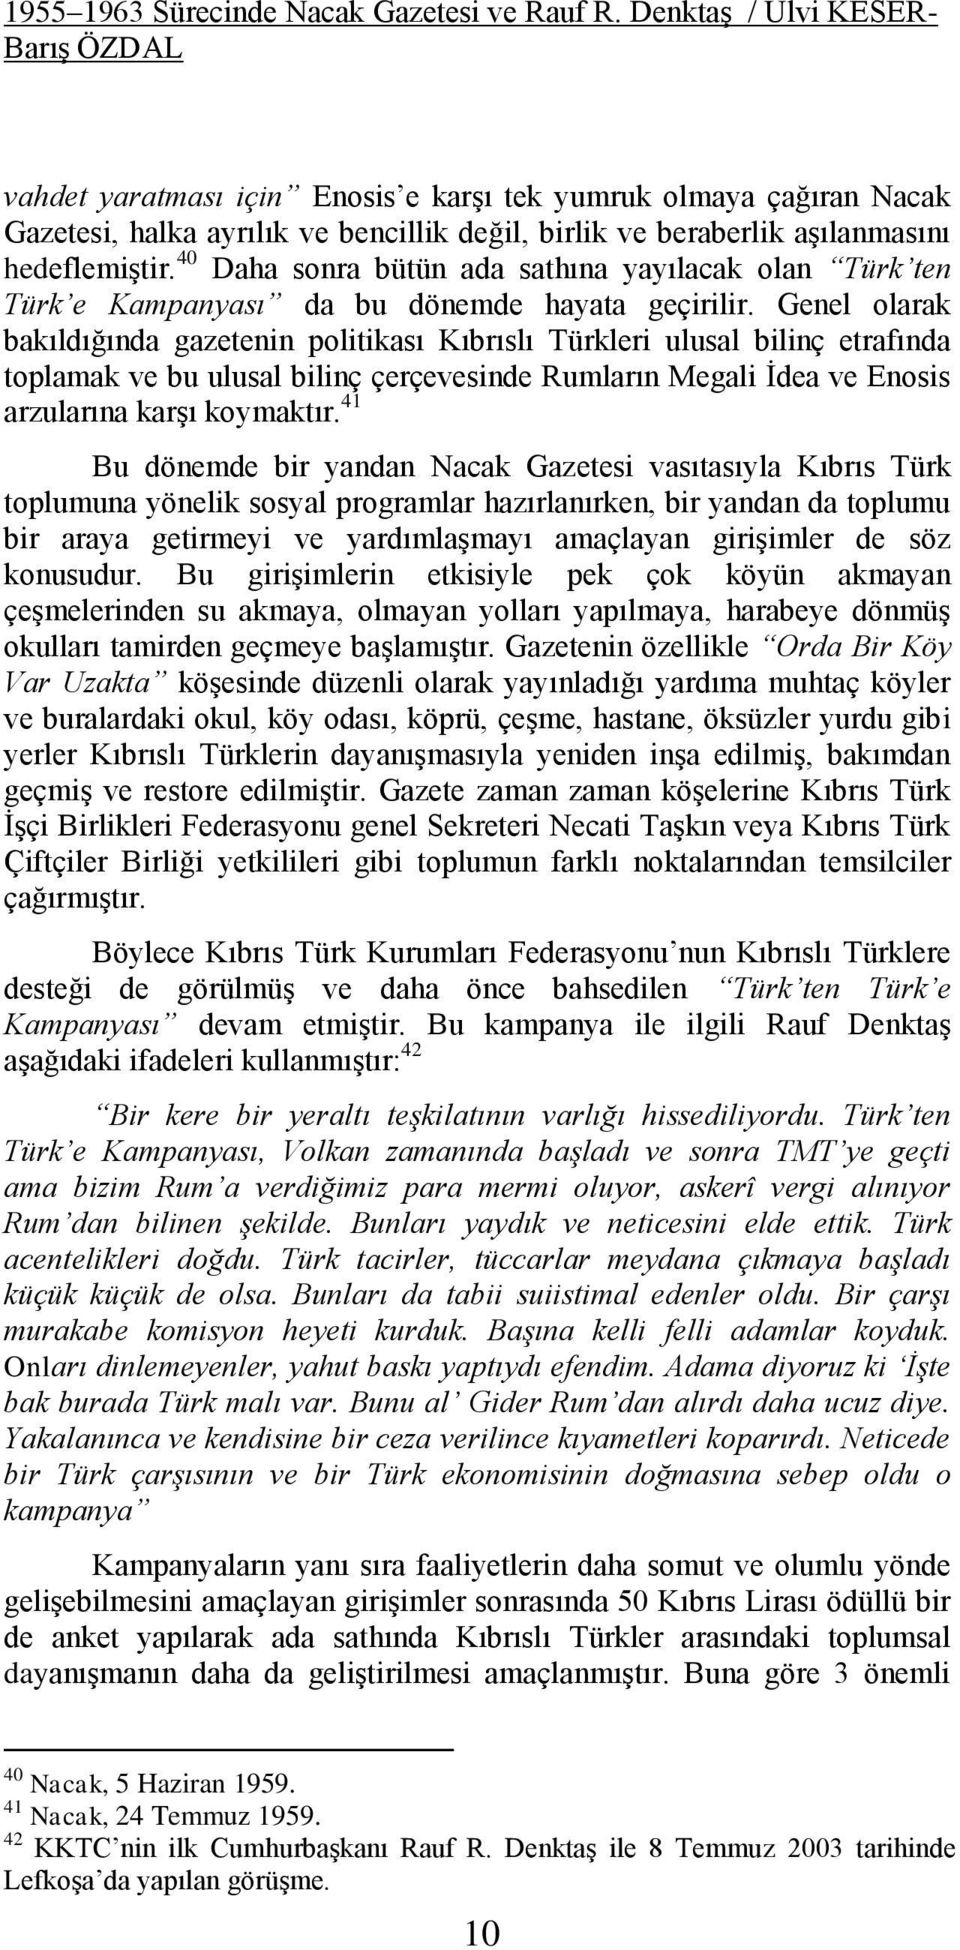 40 Daha sonra bütün ada sathına yayılacak olan Türk ten Türk e Kampanyası da bu dönemde hayata geçirilir.